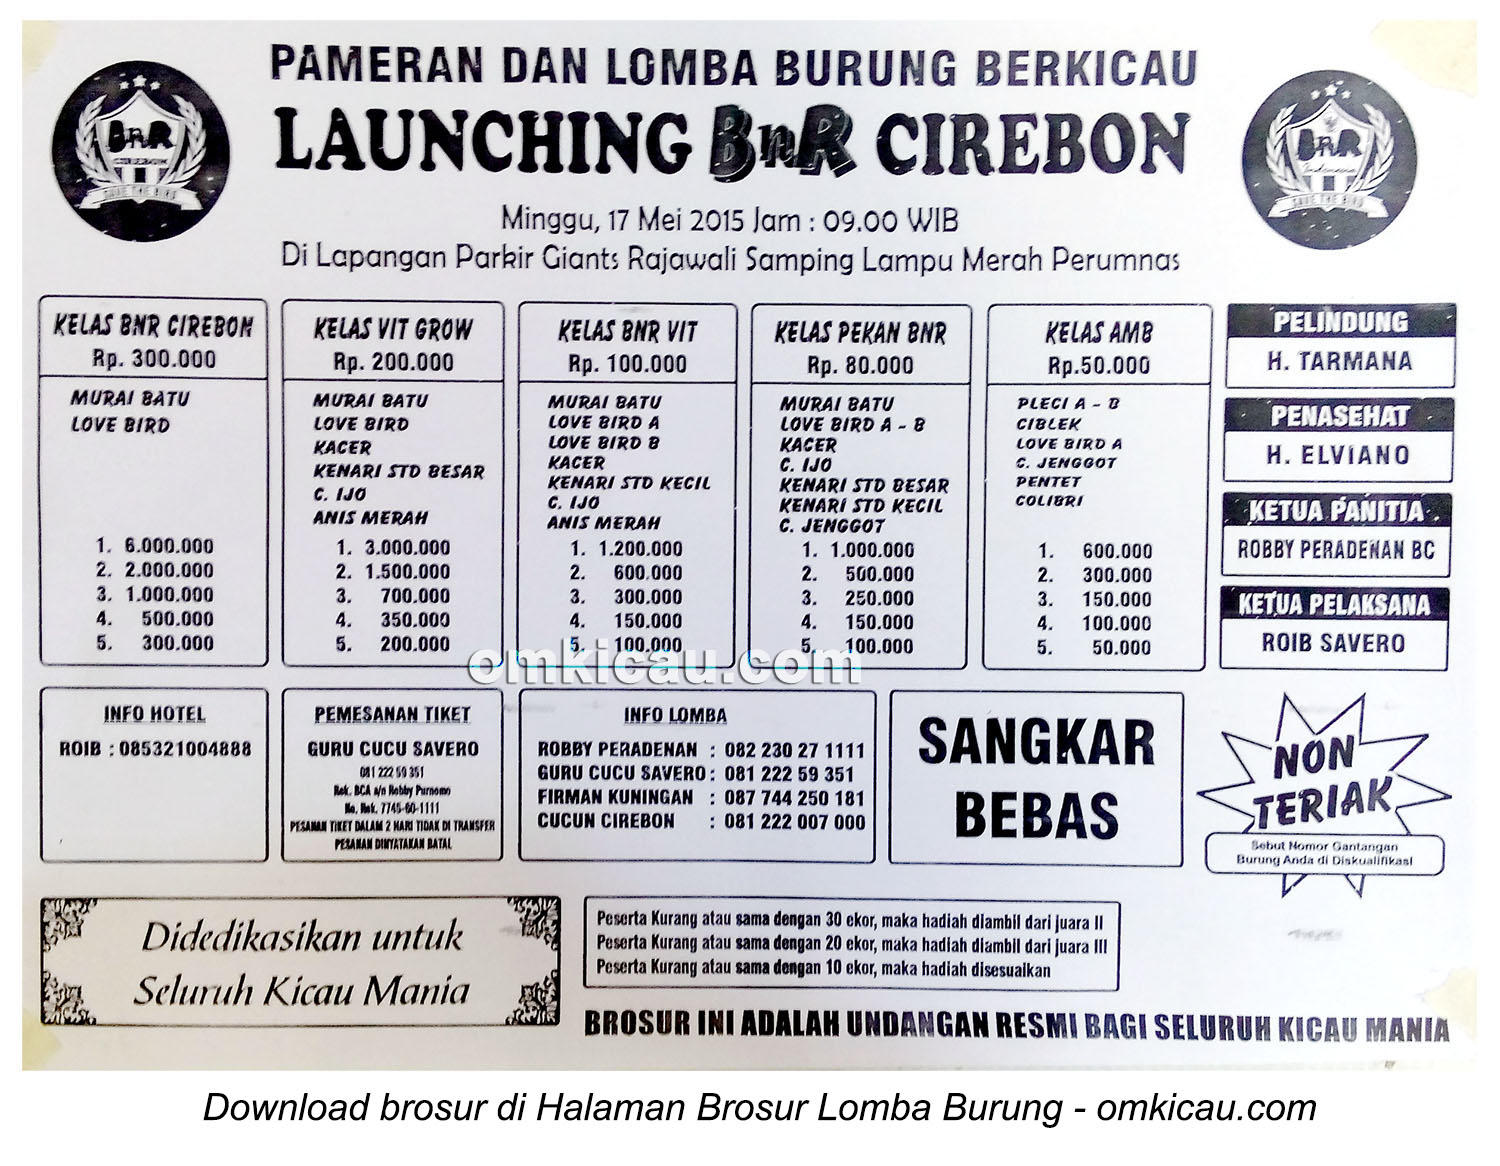 Brosur Lomba Burung Berkicau Launching BnR Cirebon, 17 Mei 2015